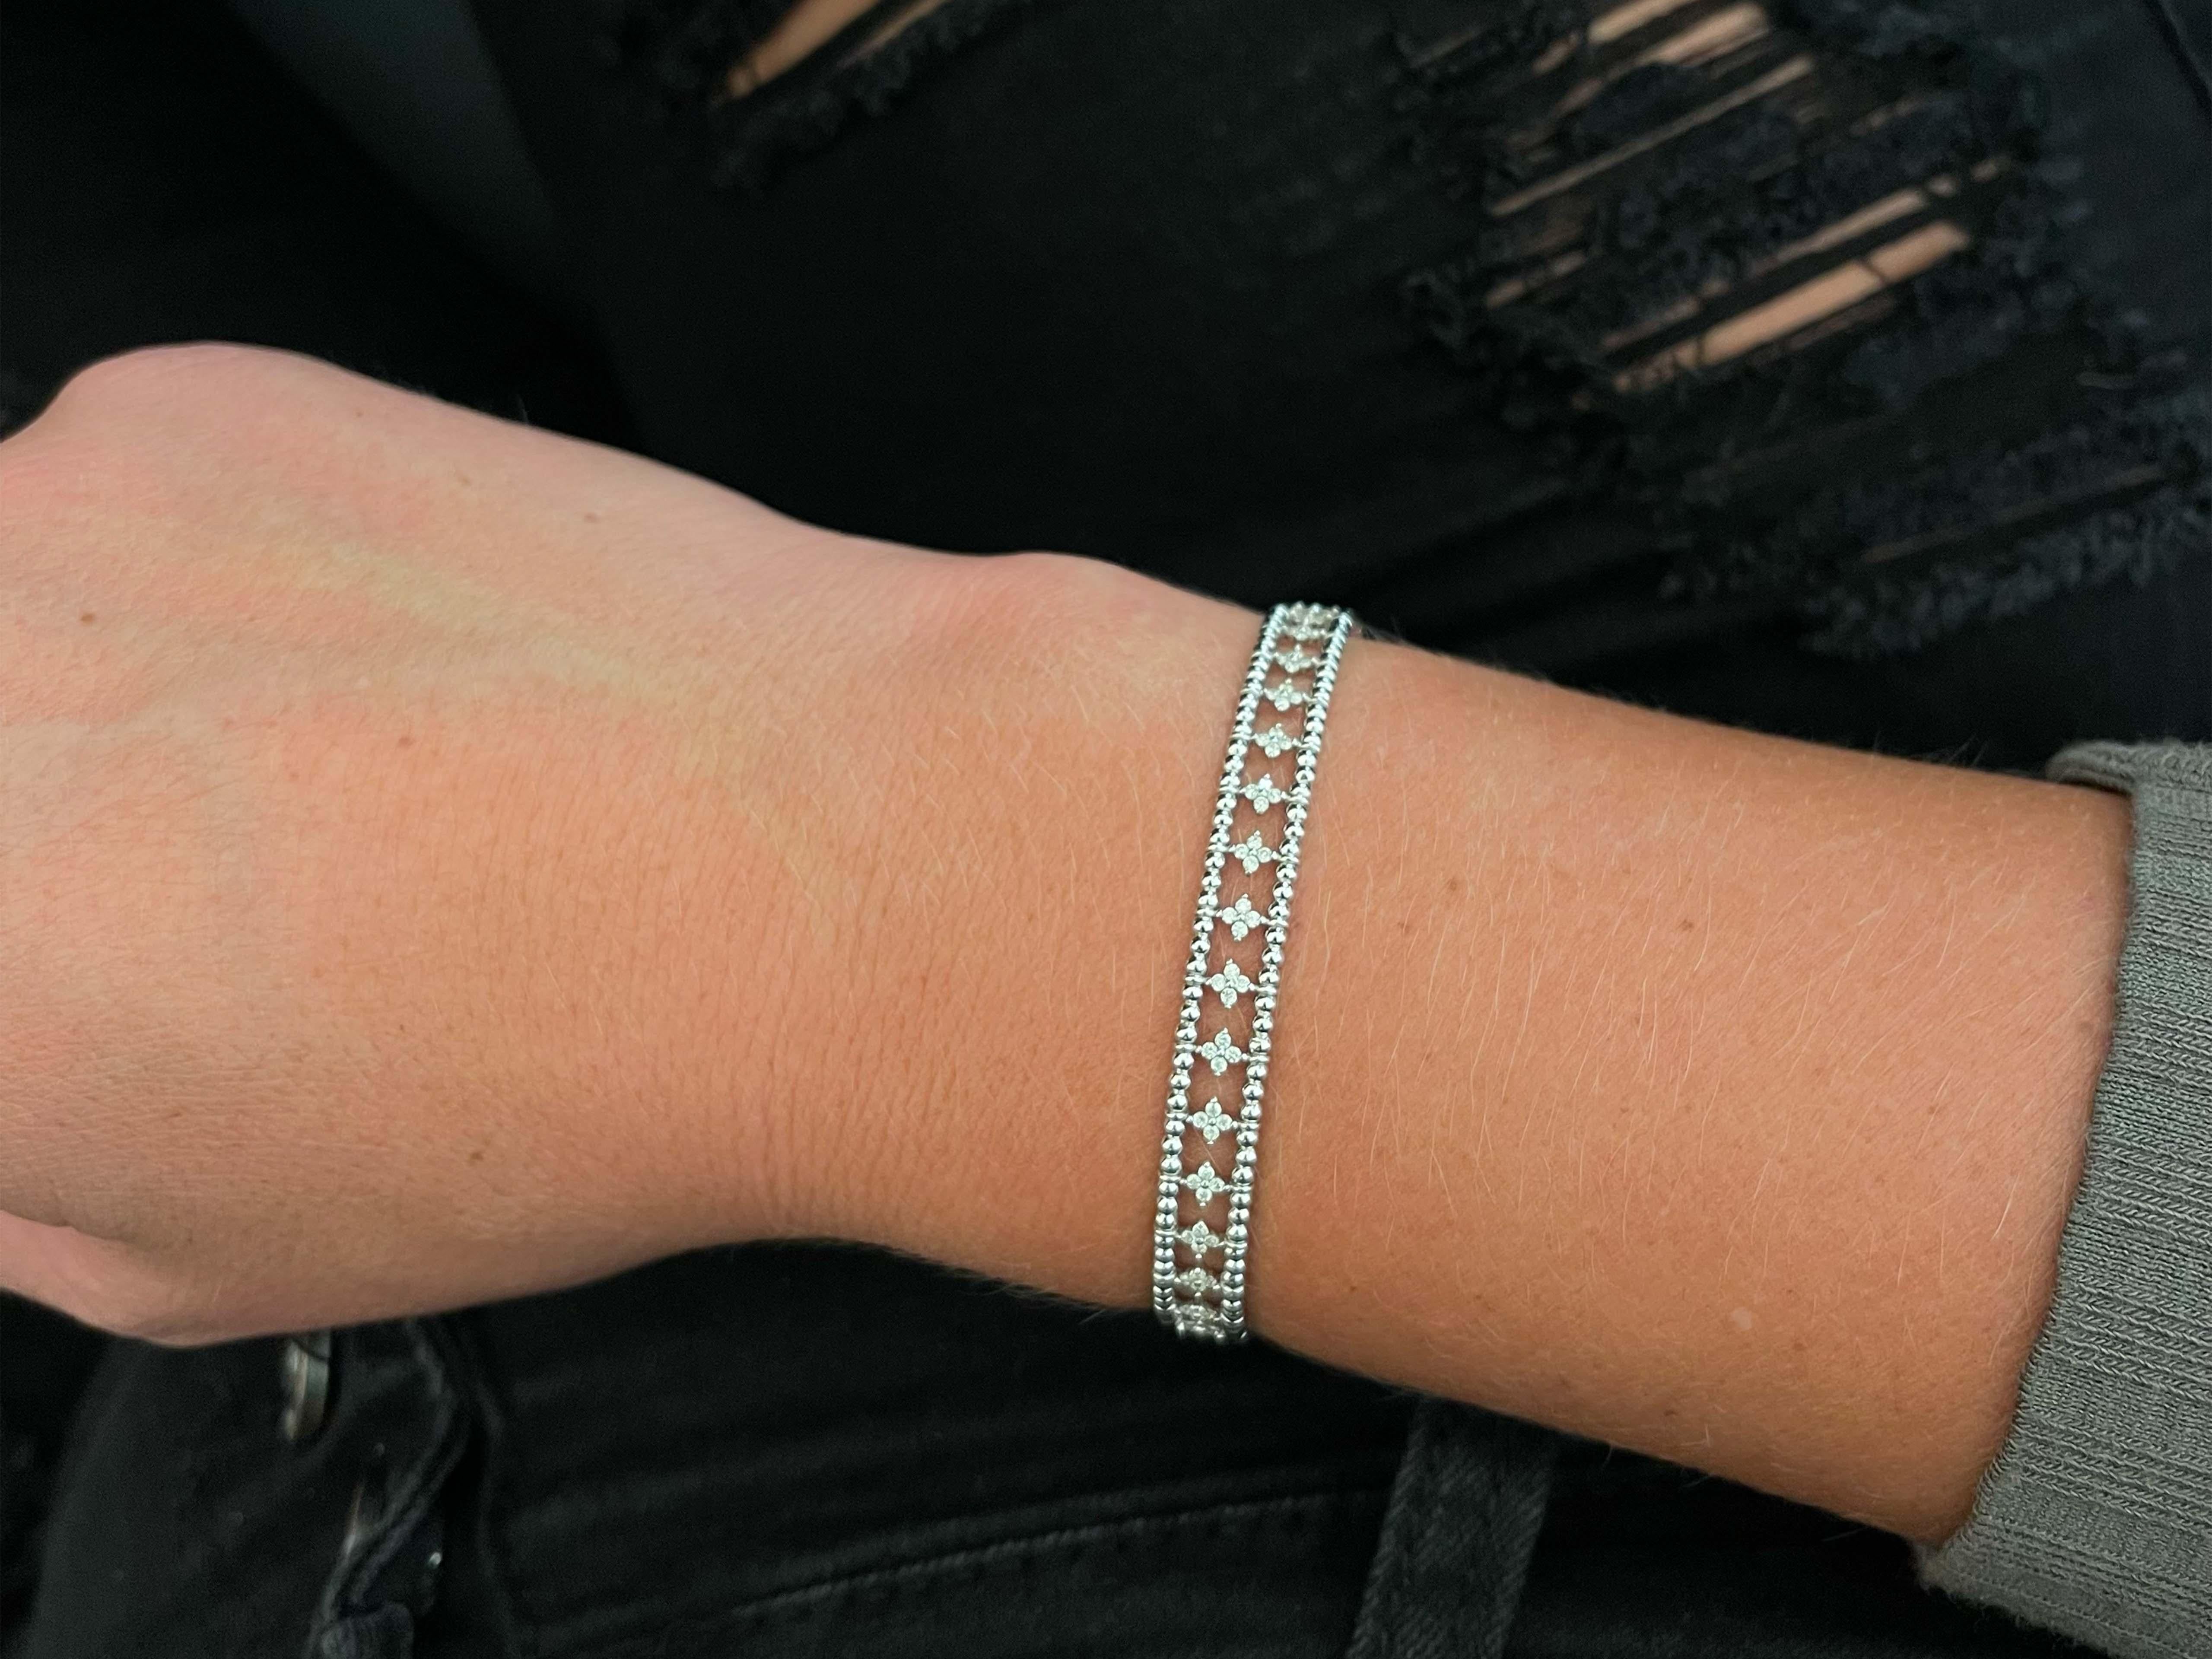 Ce magnifique bracelet flexible présente de nombreux diamants en forme de fleurs pesant au total ~0,70 carats. Les diamants sont de couleur G-H et de pureté VS. Le bracelet est équipé d'un fermoir à glissière. Le diamètre intérieur mesure 57 mm par